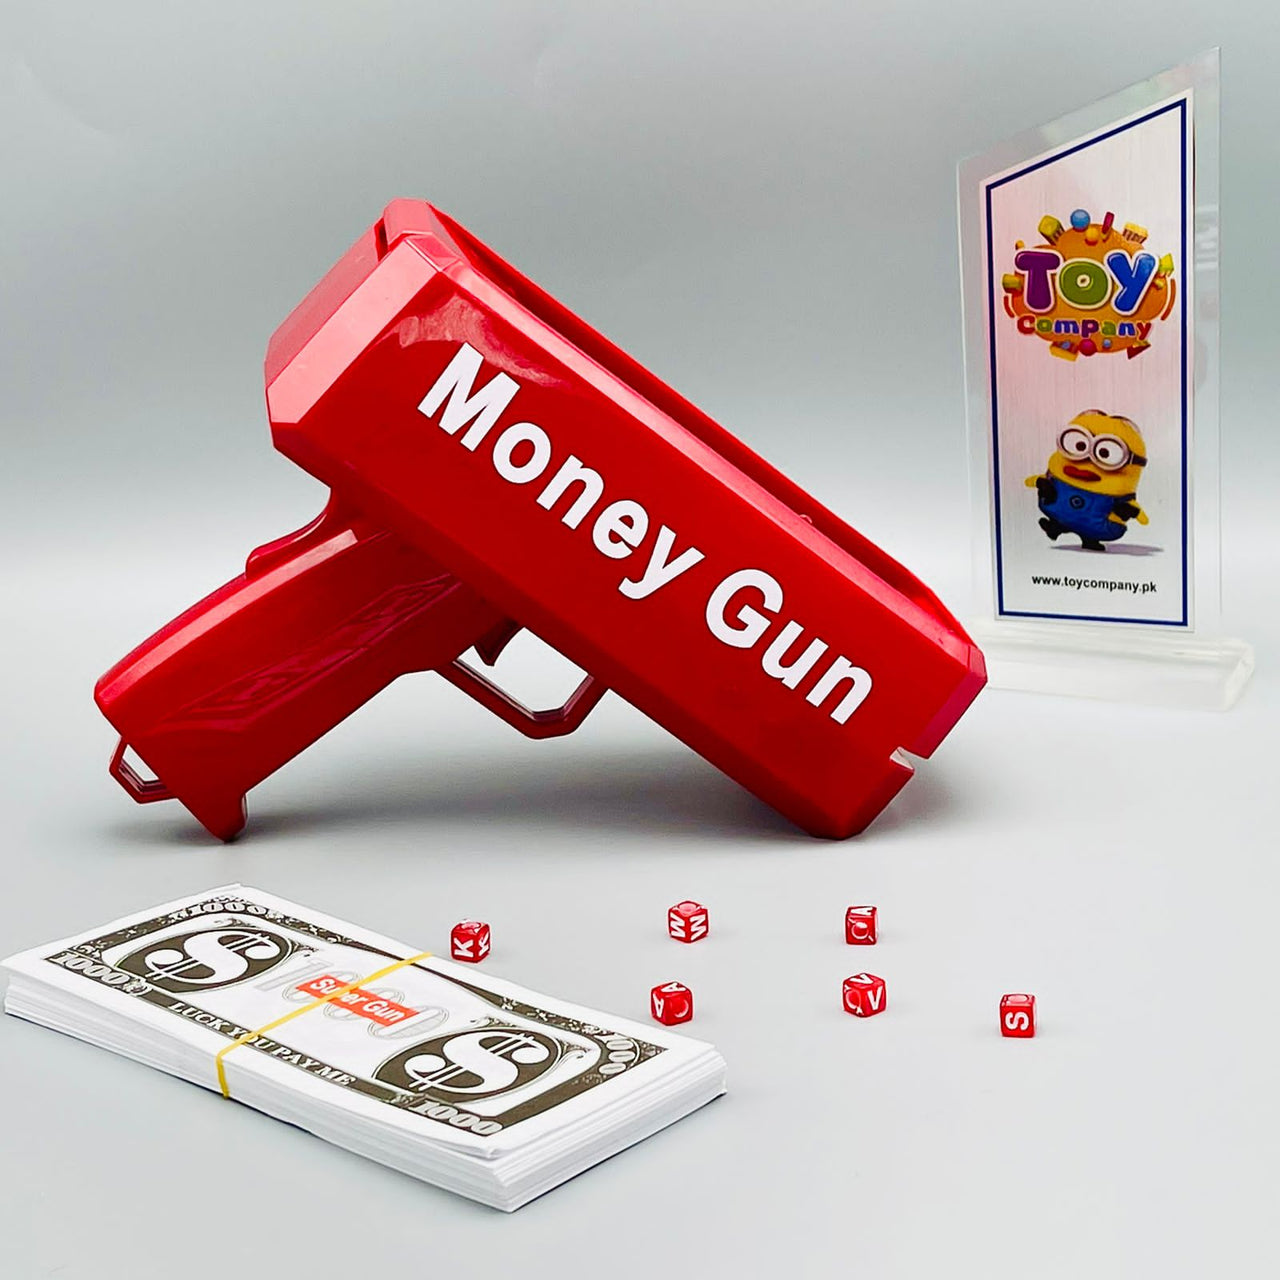 Super Money Rain Gun